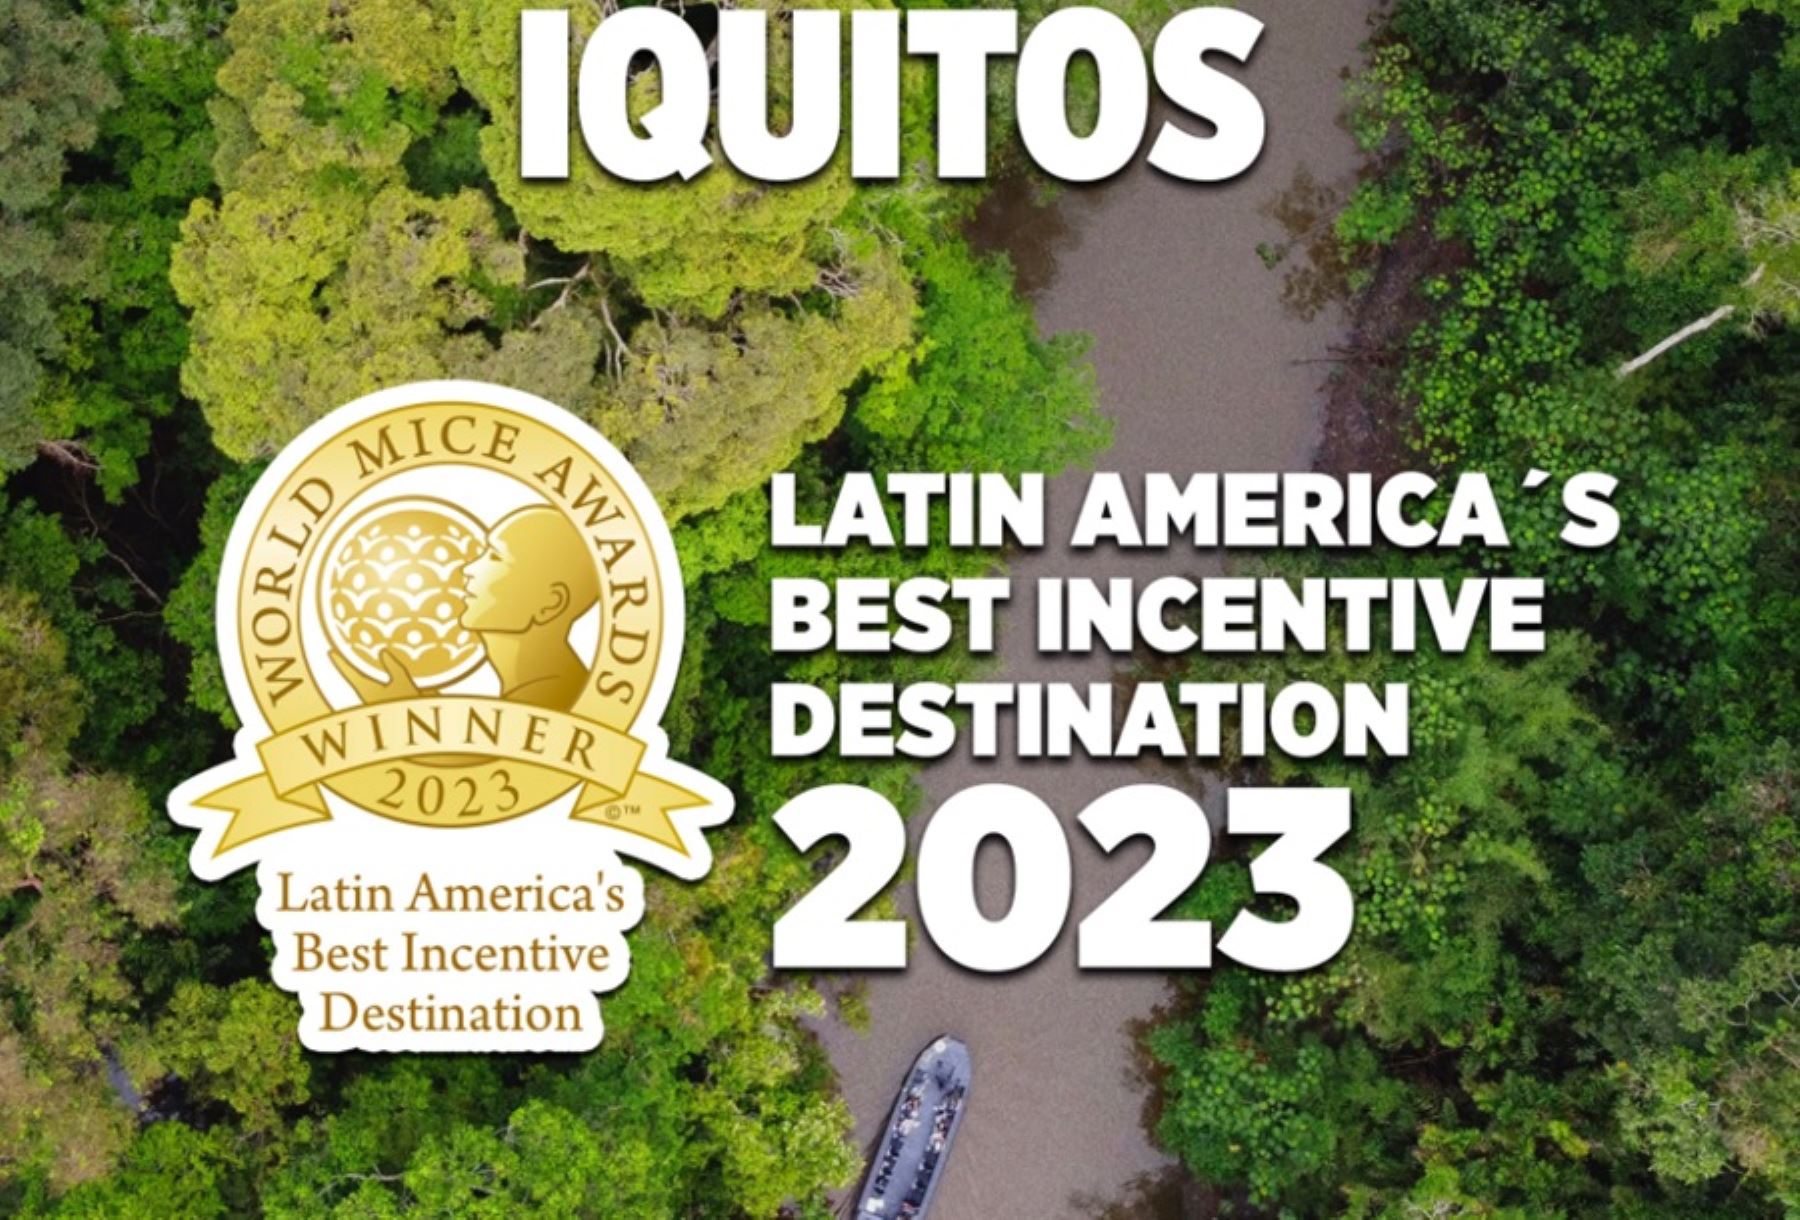 La ciudad de Iquitos, capital de la región Loreto, fue reconocida como Mejor destino de incentivos de América Latina por los World MICE Awards.